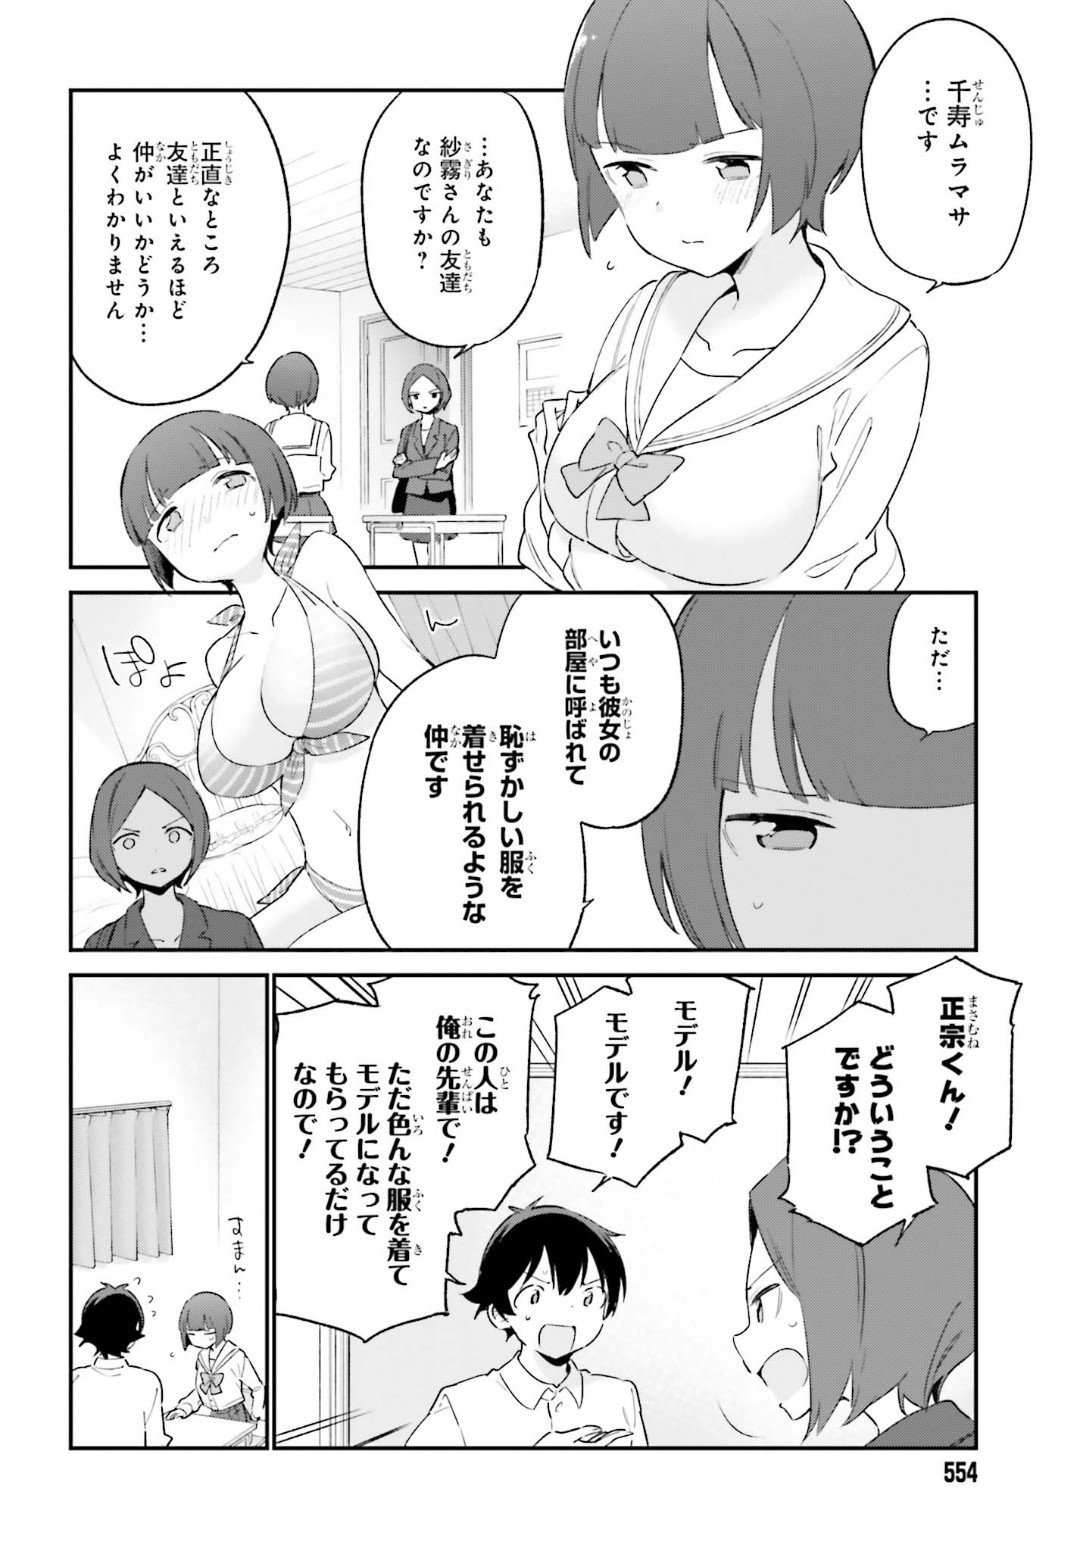 Ero Manga Sensei - Chapter 64 - Page 6